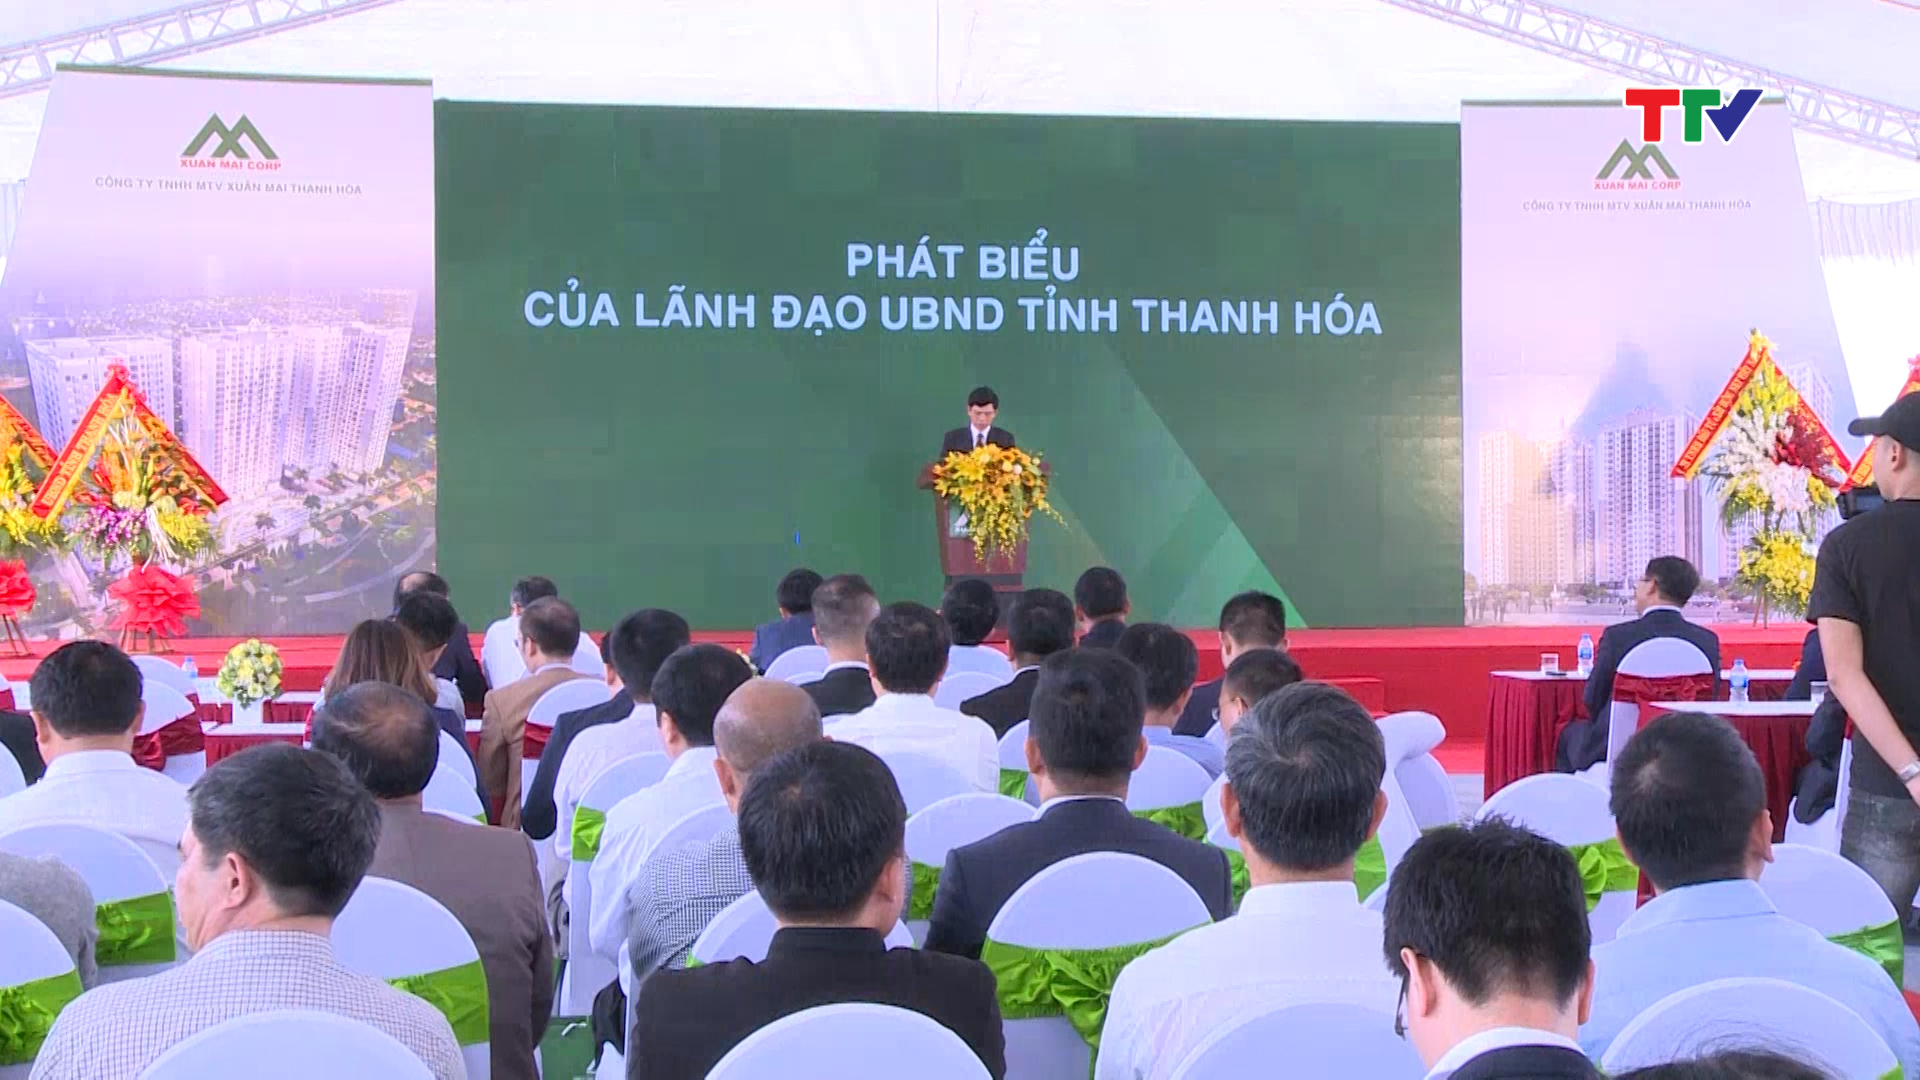 Đồng chí Lê Anh Tuấn, Phó Chủ tịch UBND tỉnh đánh giá cao nỗ lực của Công ty TNHH MTV Xuân Mai Thanh Hóa trong triển khai dự án